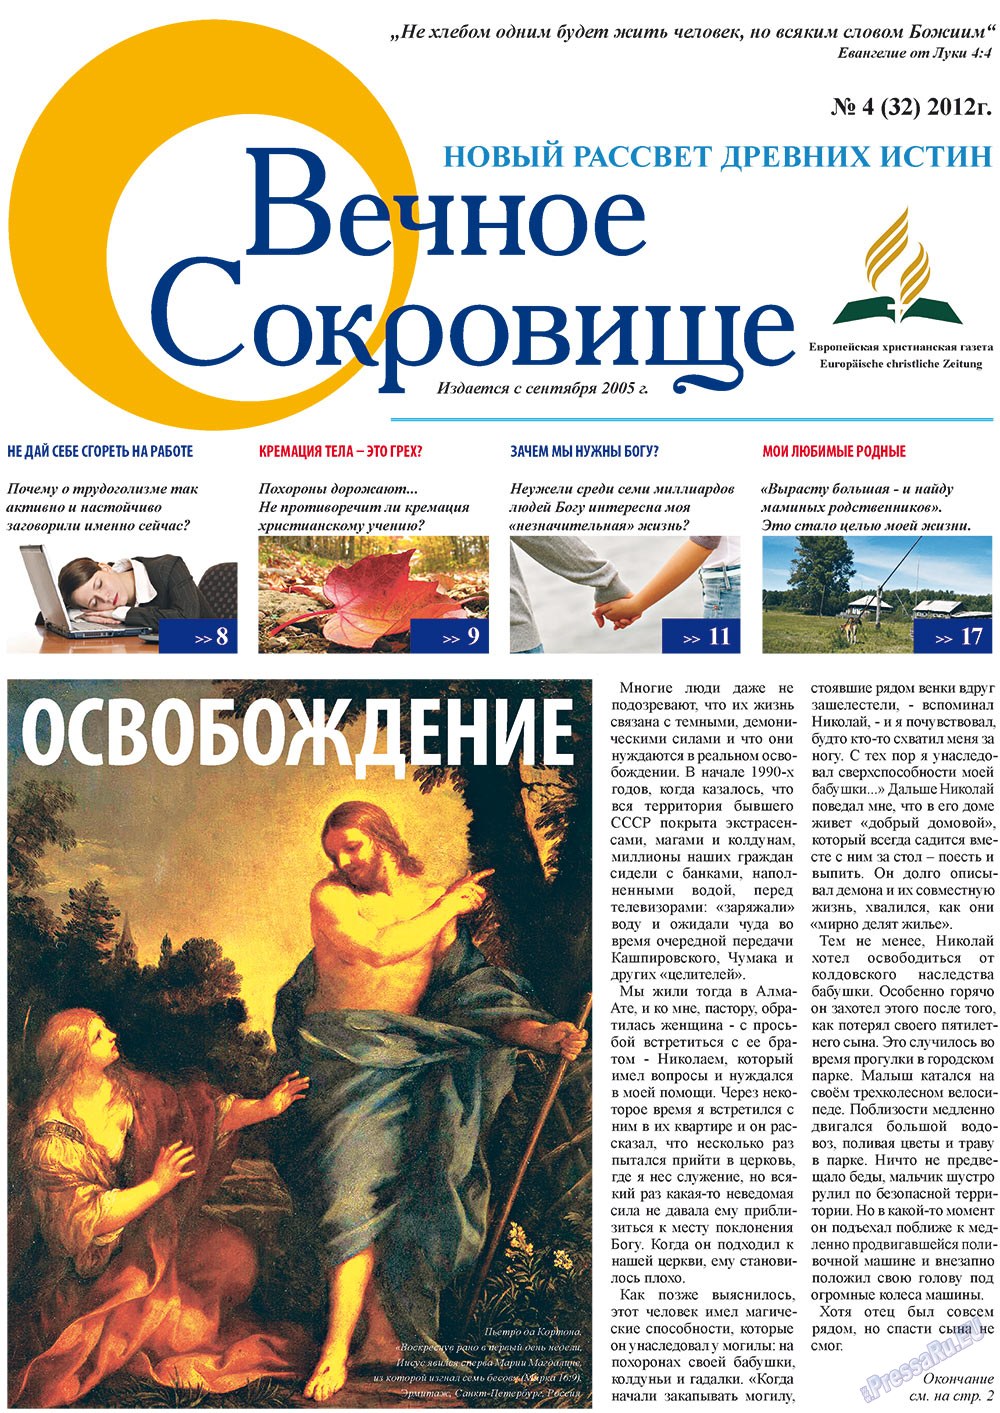 Вечное сокровище (газета). 2012 год, номер 4, стр. 1